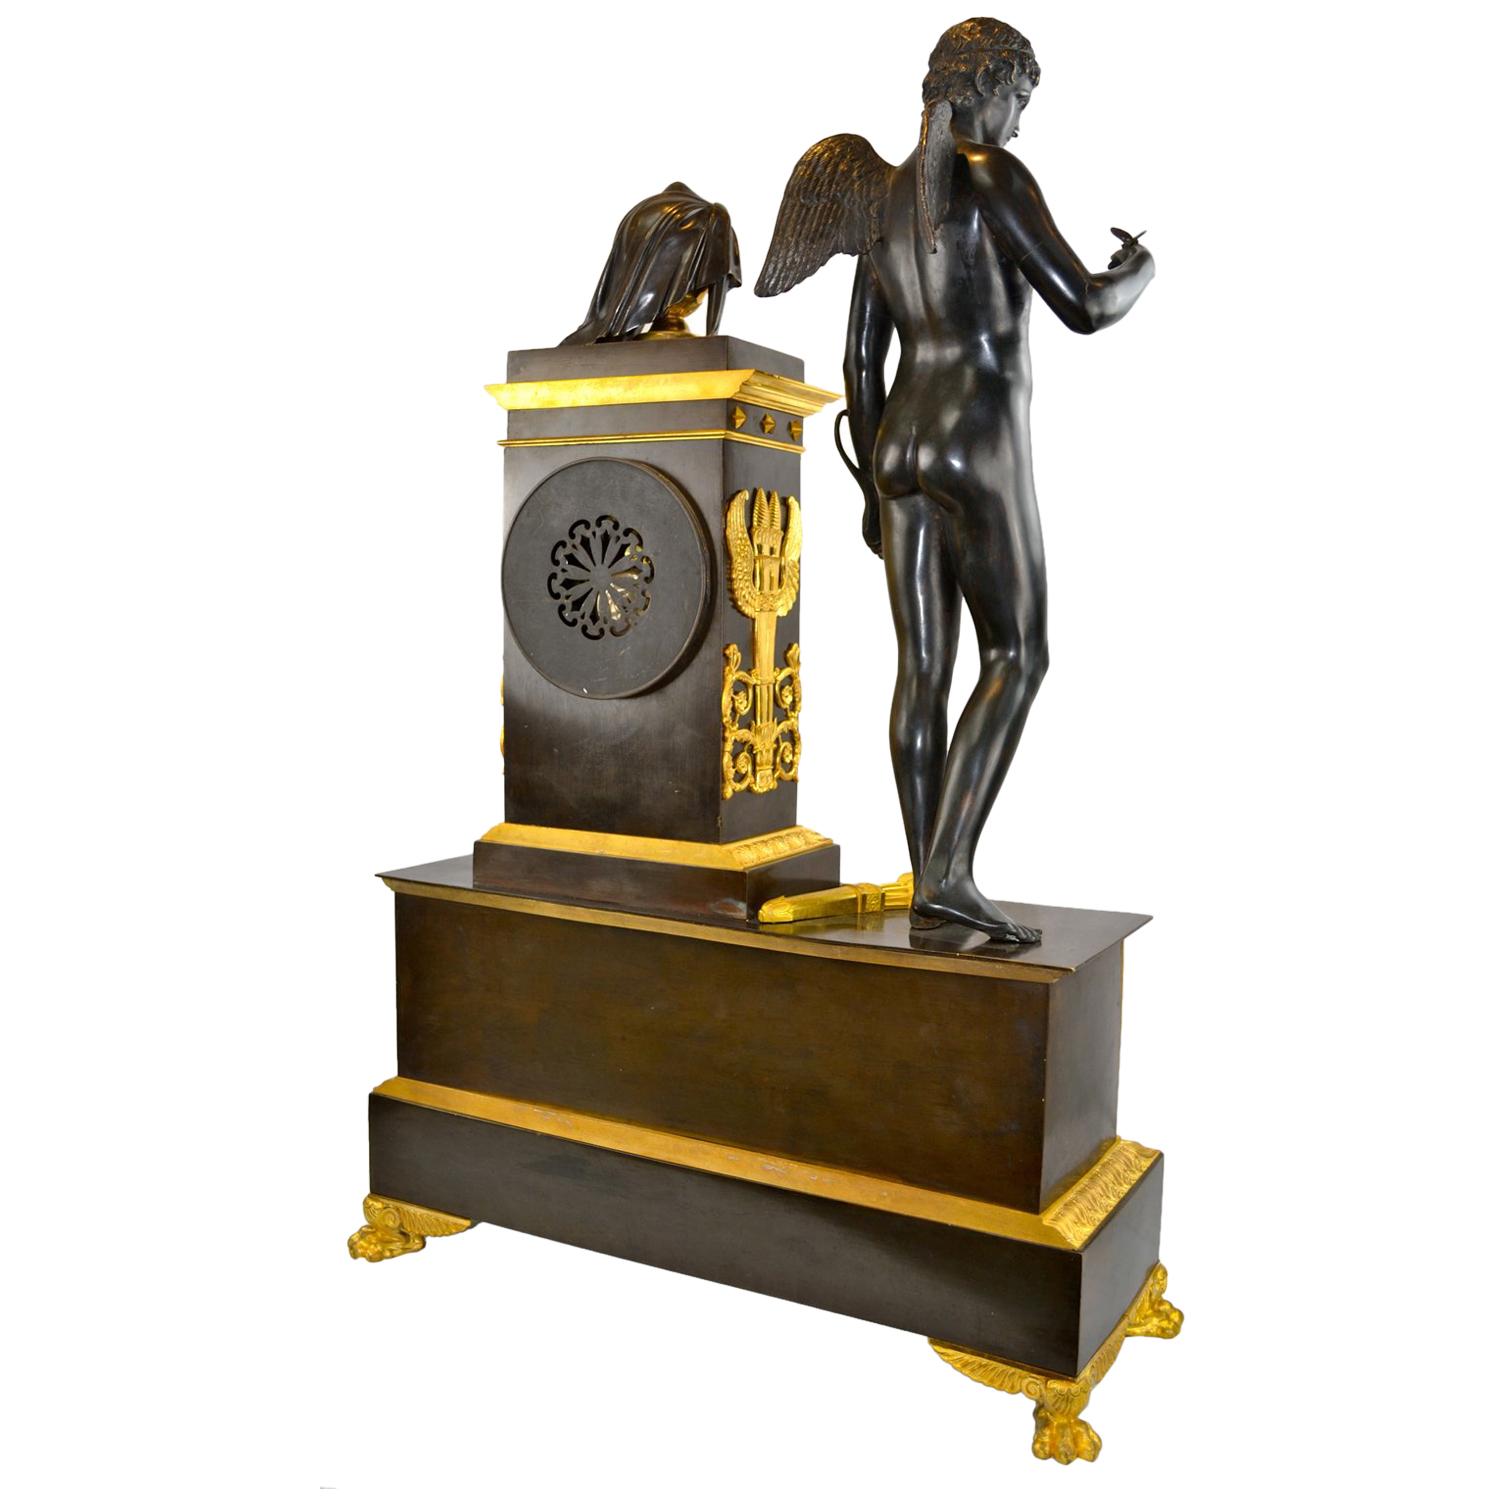 Pendule de cheminée de la fin de l'Empire français, d'échelle palatiale, représentant Cupidon et Eurydice. La base rectangulaire en bronze patiné repose sur quatre pieds en forme de pattes de lion et présente une frise dorée sur tout le devant,